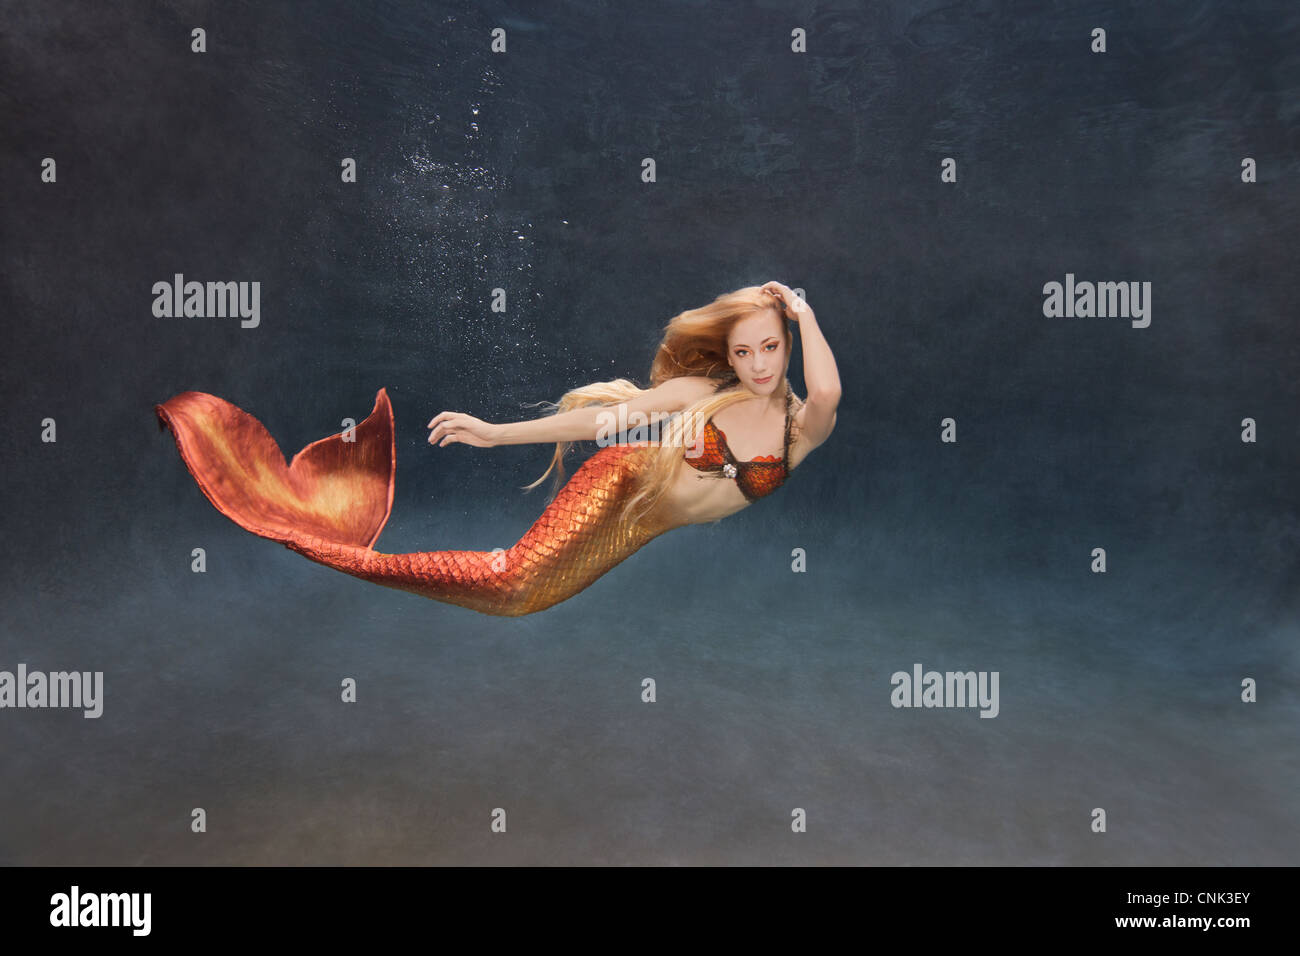 Young mermaid swimming underwater Stock Photo